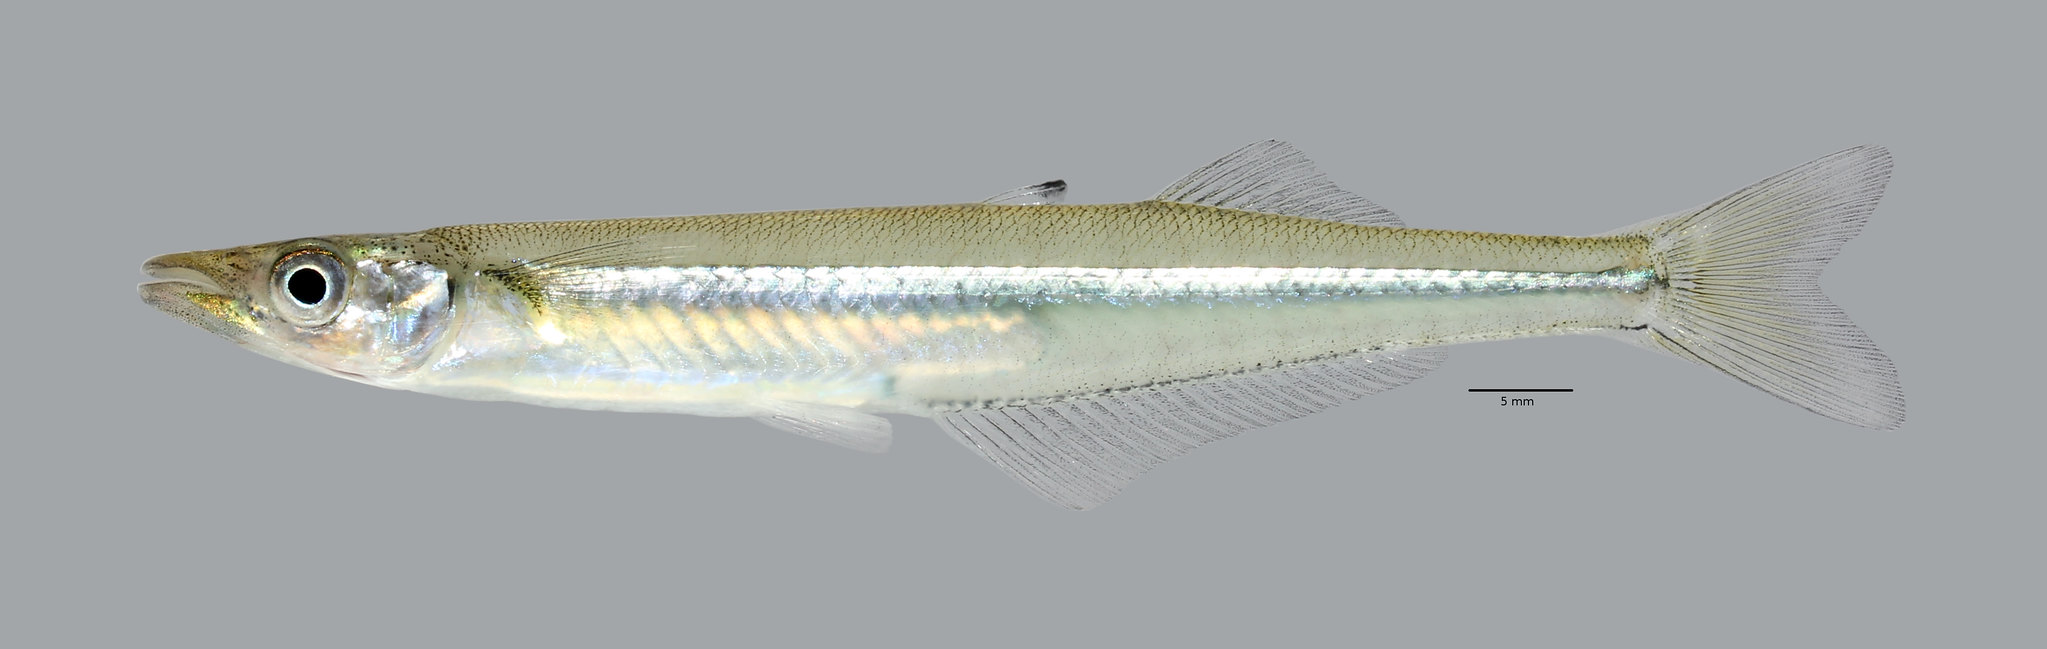 Черноморский окунь фото — ловись рыбка